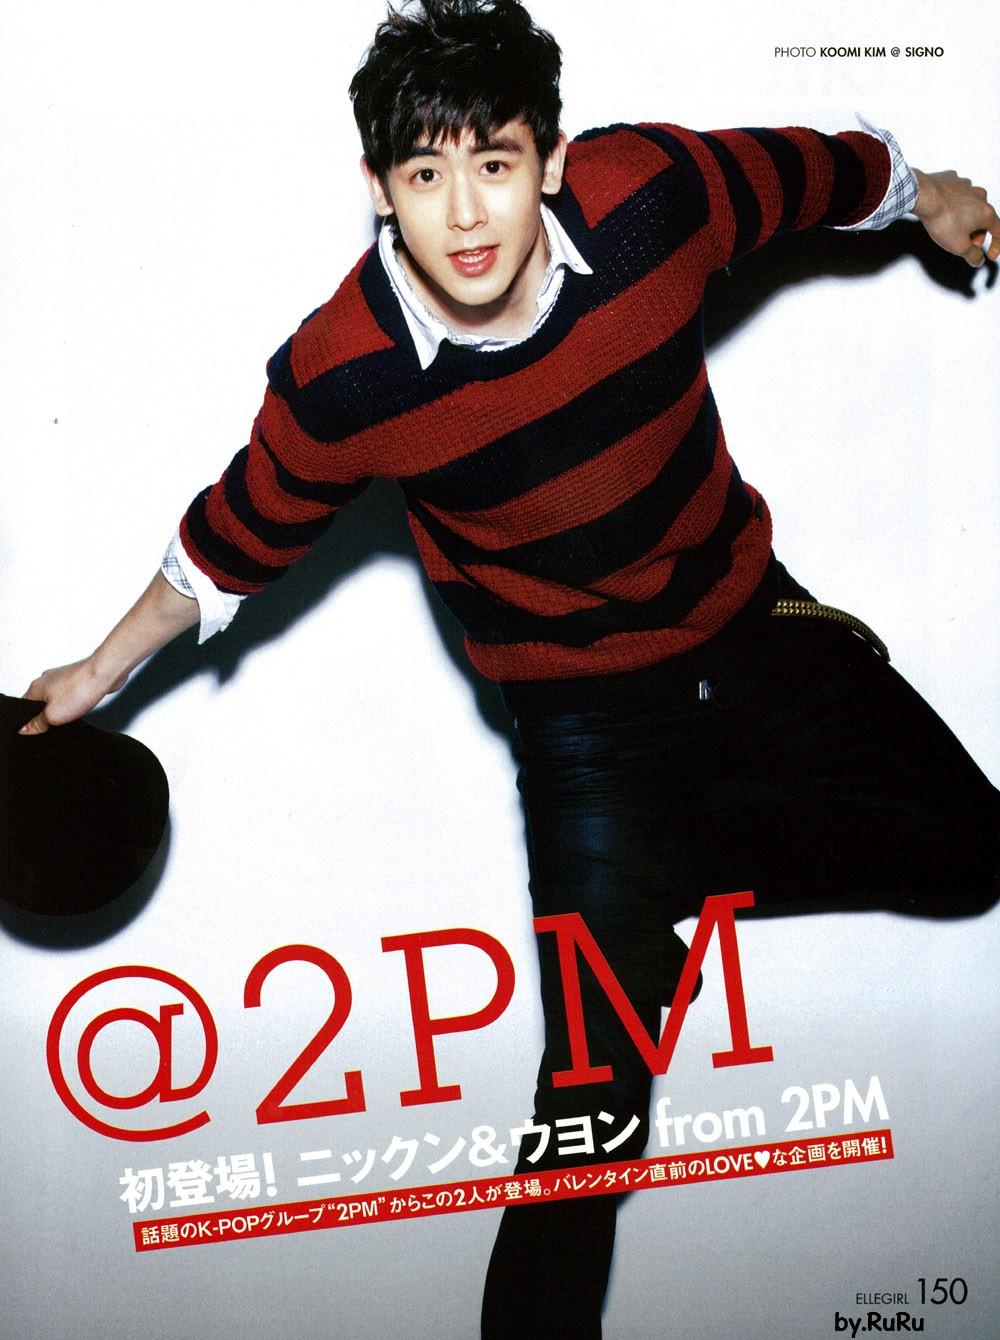 นิชคุณ 2PM